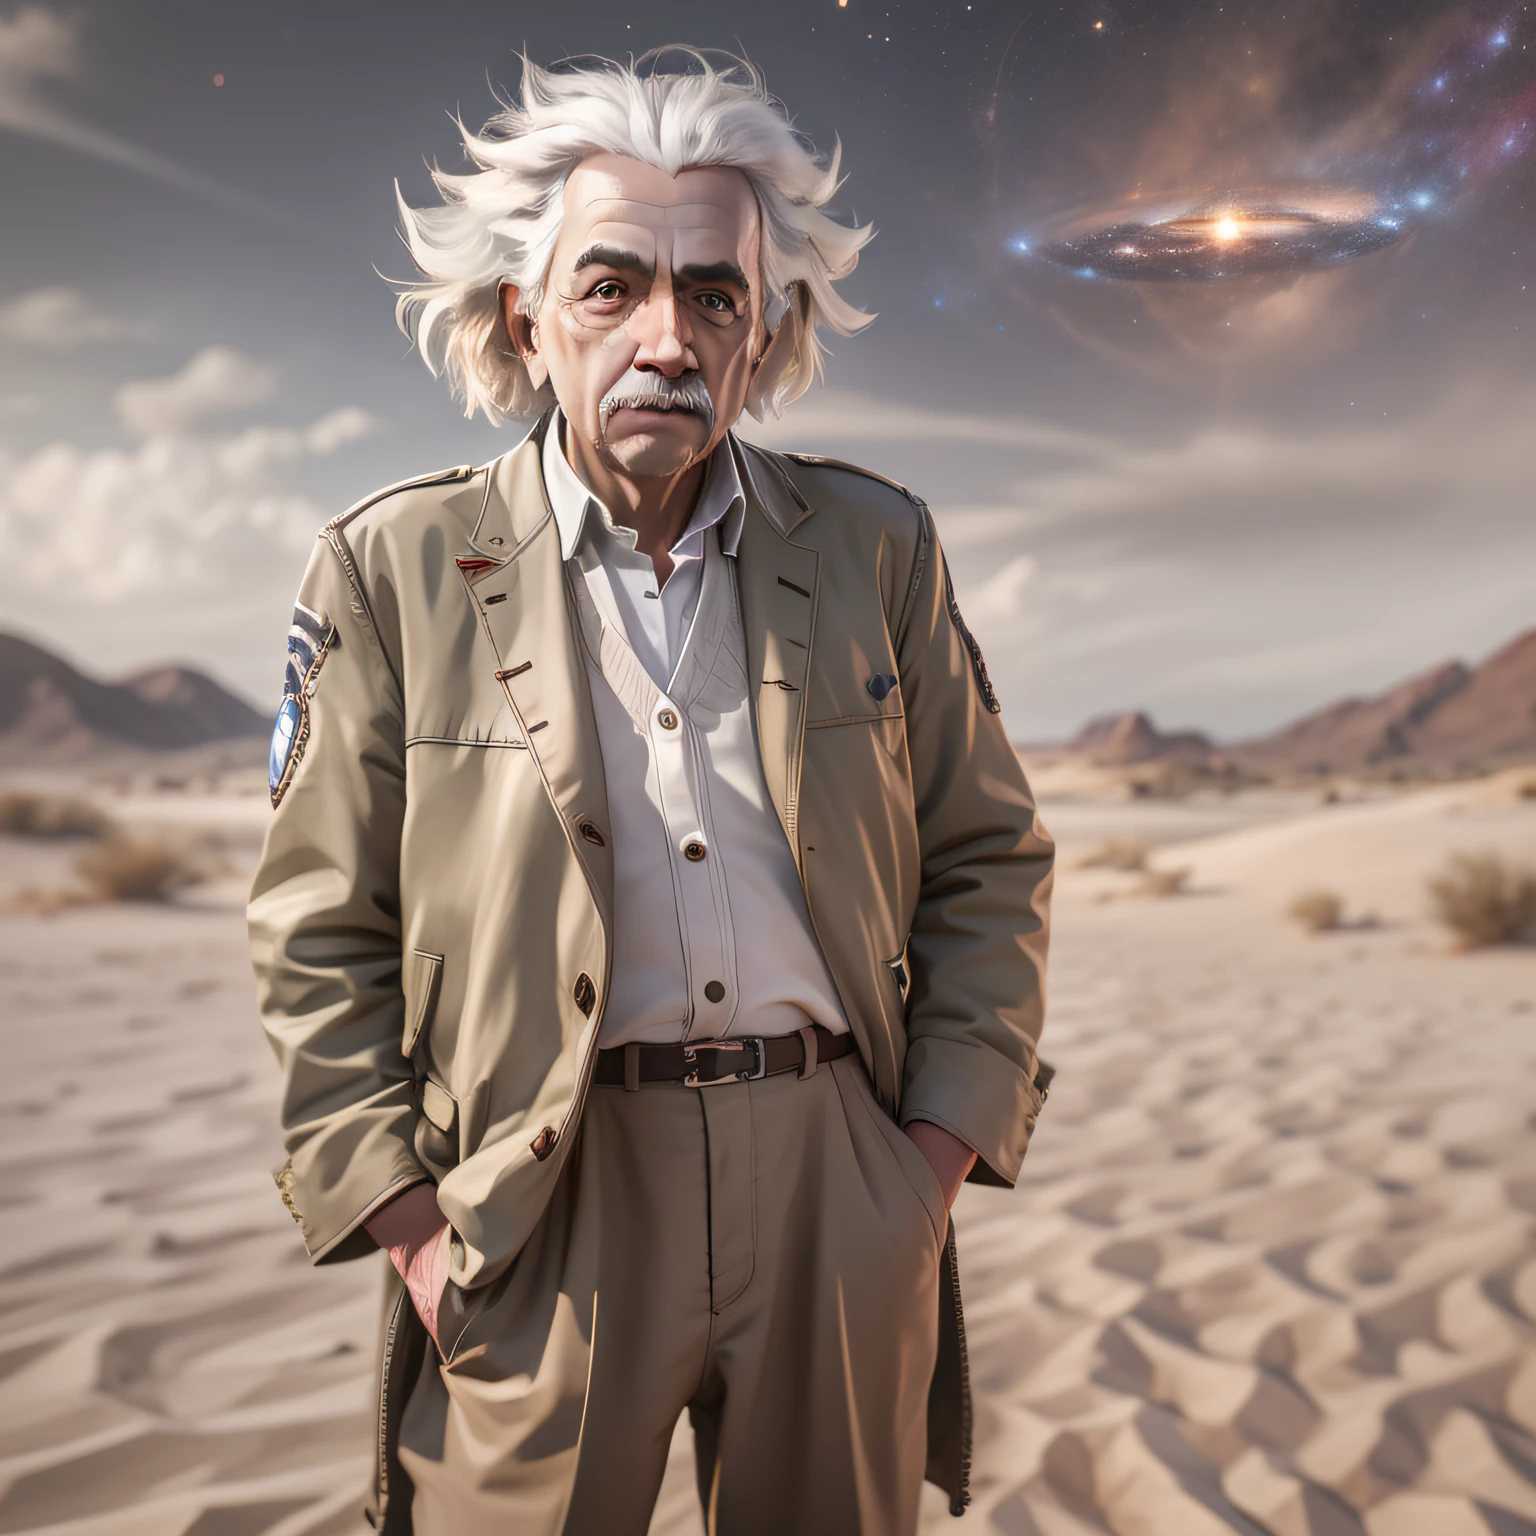 Ganzkörperporträt von Albert Einstein, hyperrealistisch, wie ein Gott, Wüstenkleidung, Hyperdetailliert, shot on Hasselblad H4D 200MS Digital Camera, Mitakon Speedmaster 65mm f/ 1. 4 XCD, Galaxy, dimensionaler Effekt, Fresnel-Beleuchtung